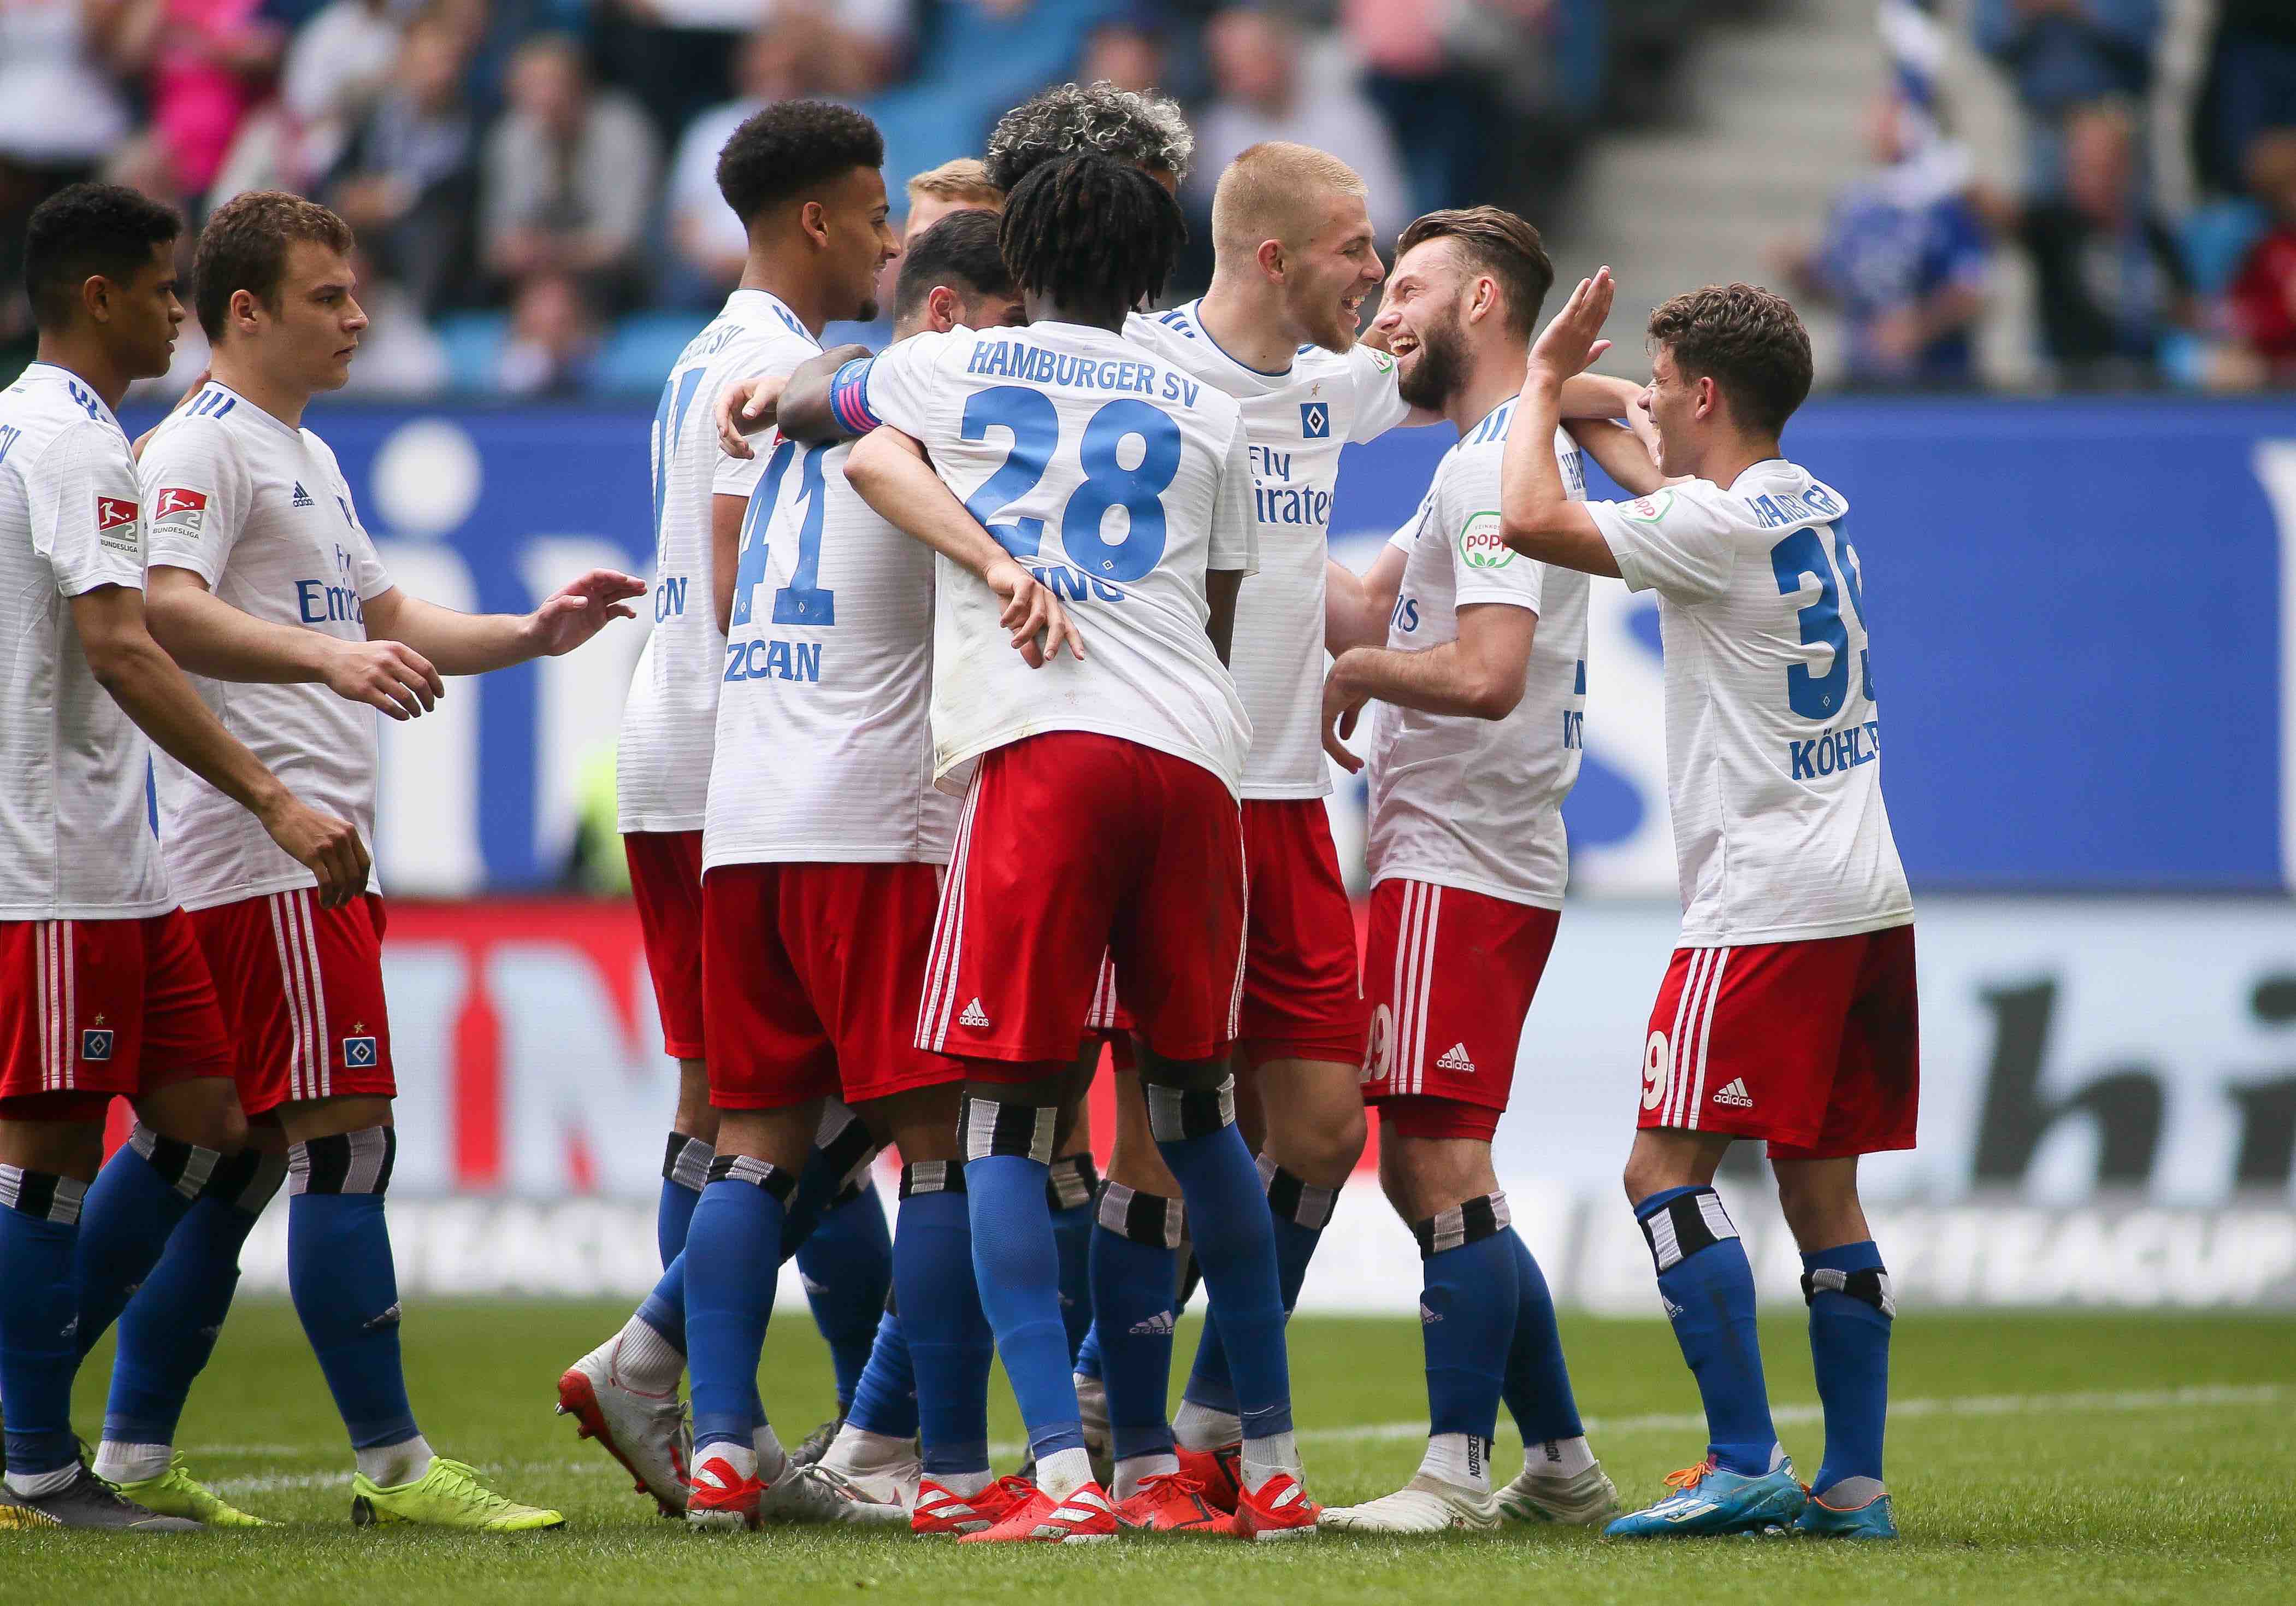 Admiral Sportwetten schließt Bundesliga-Sponsoring ab